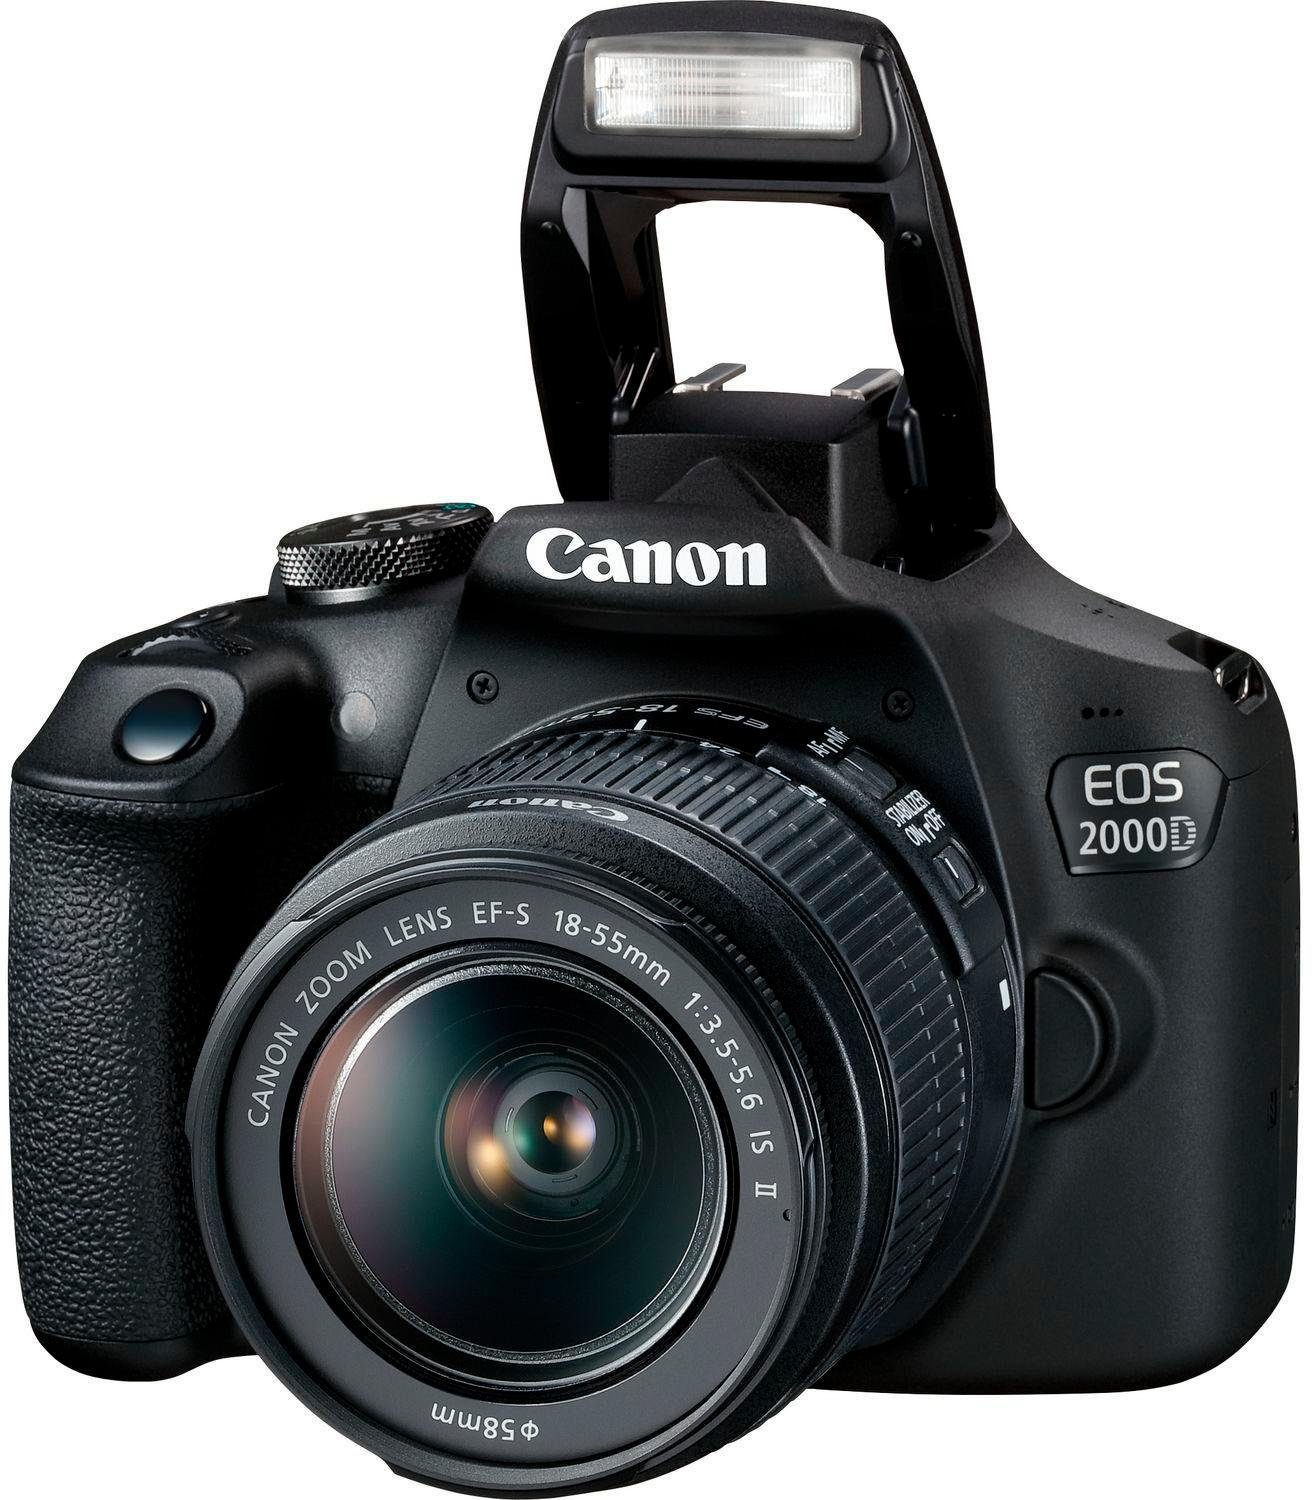 Spiegelreflexkamera WLAN 24,1 Kit 18-55 (EF-S II 2000D IS inkl. NFC, IS MP, 18-55 II, Objektiv) EOS EF-S (Wi-Fi), Canon